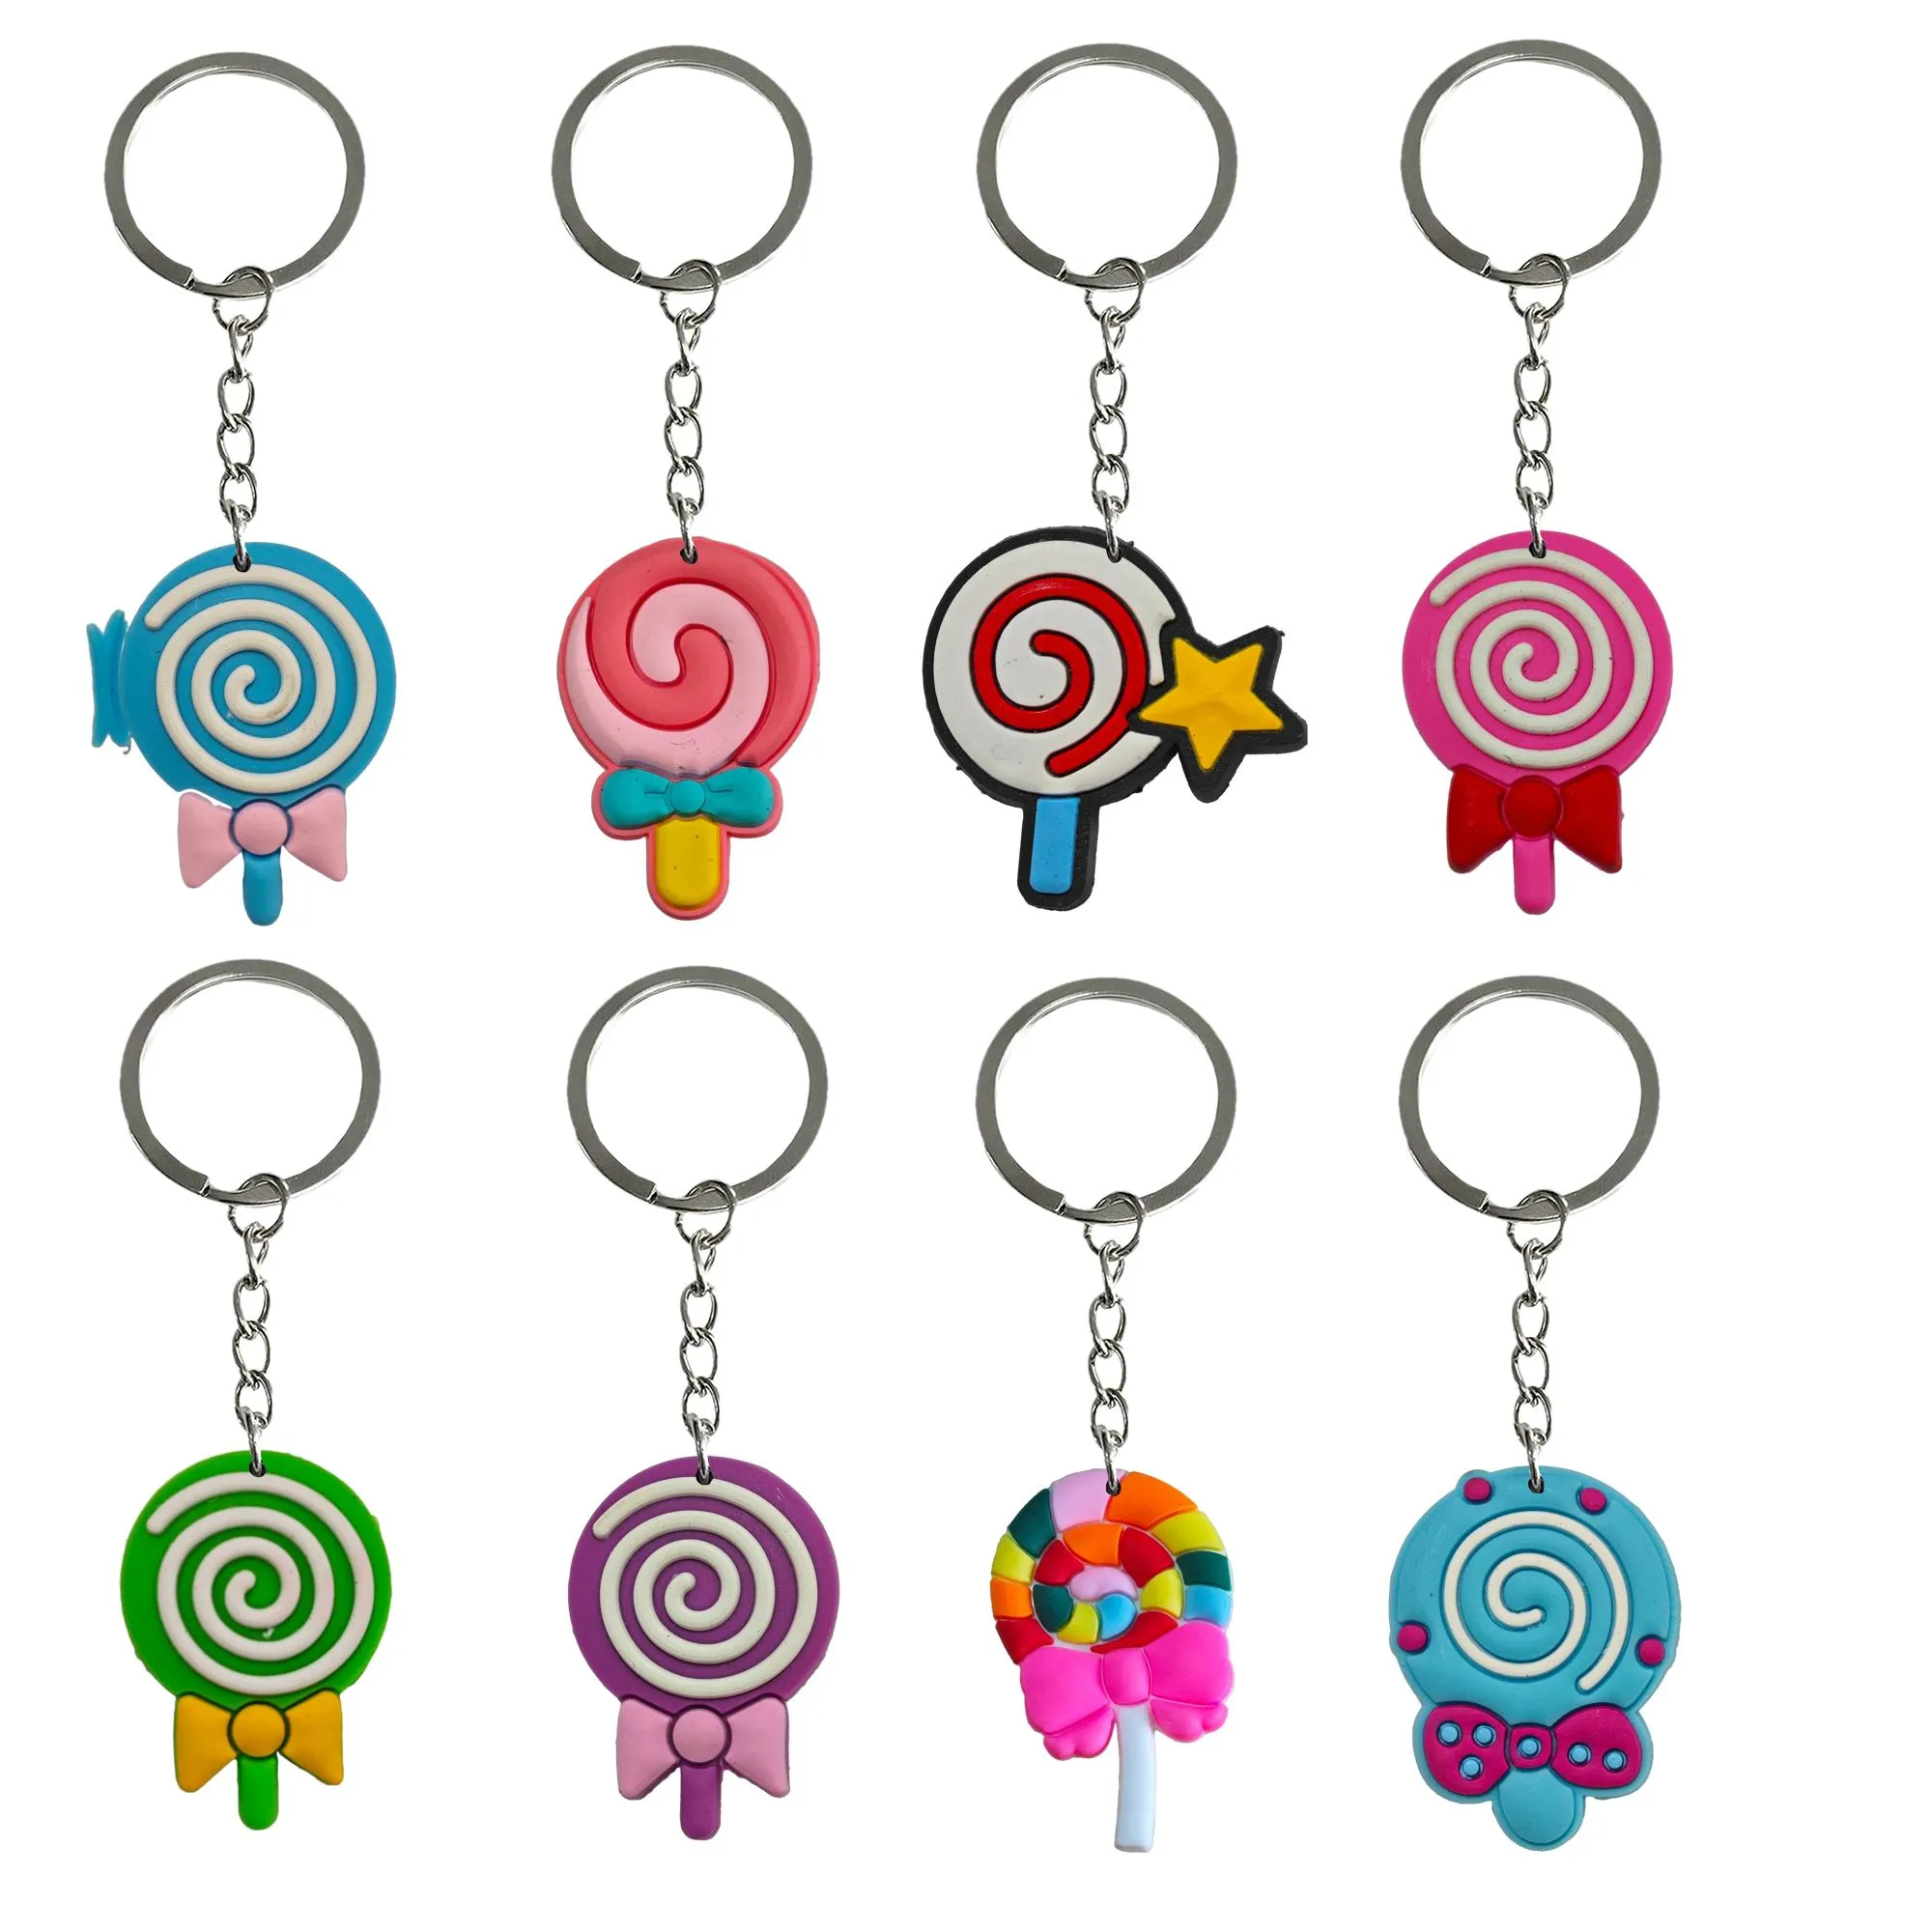 Keychain Favors Lollipop pour les tags Goodie Bag Sober Cadeaux de Noël Kelechains Girls and Holiday Charms Keyring Scolarbag Goy Otvfa approprié